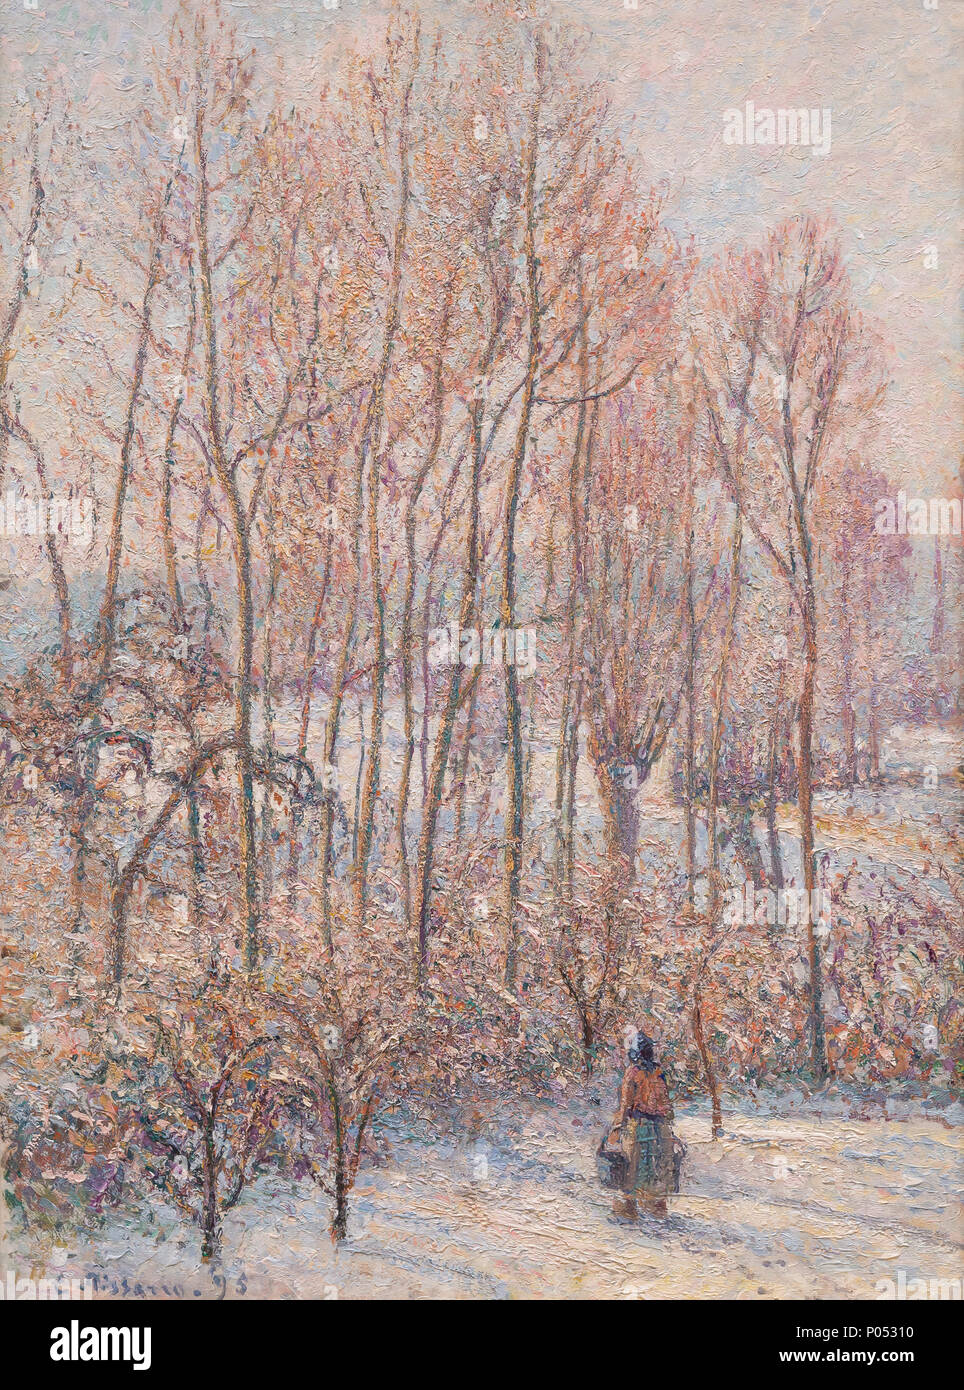 Morgen Sonnenlicht auf dem Schnee, Eragny-sur-Epte, Camille Pissarro, 1895, Museum der Bildenden Künste, Boston, Mass, USA, Nordamerika Stockfoto